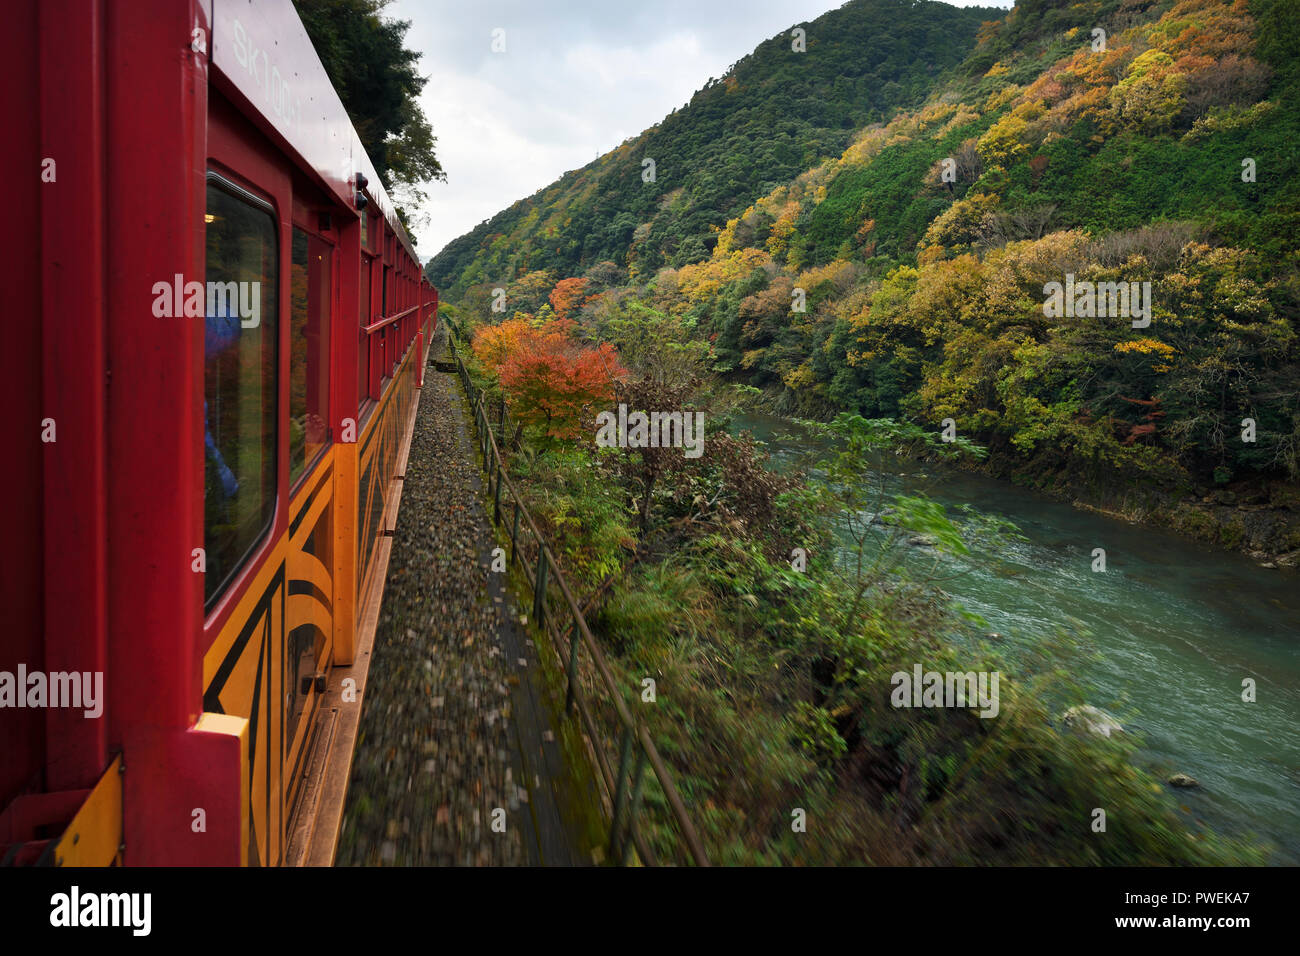 Sagano Sagano Scenic Railway, romantischen Zug, Sightseeing entlang der Schlucht und Hozugawa Hozukyo Fluss im Herbst Natur Landschaft in Kyoto, Japan 2017 Stockfoto